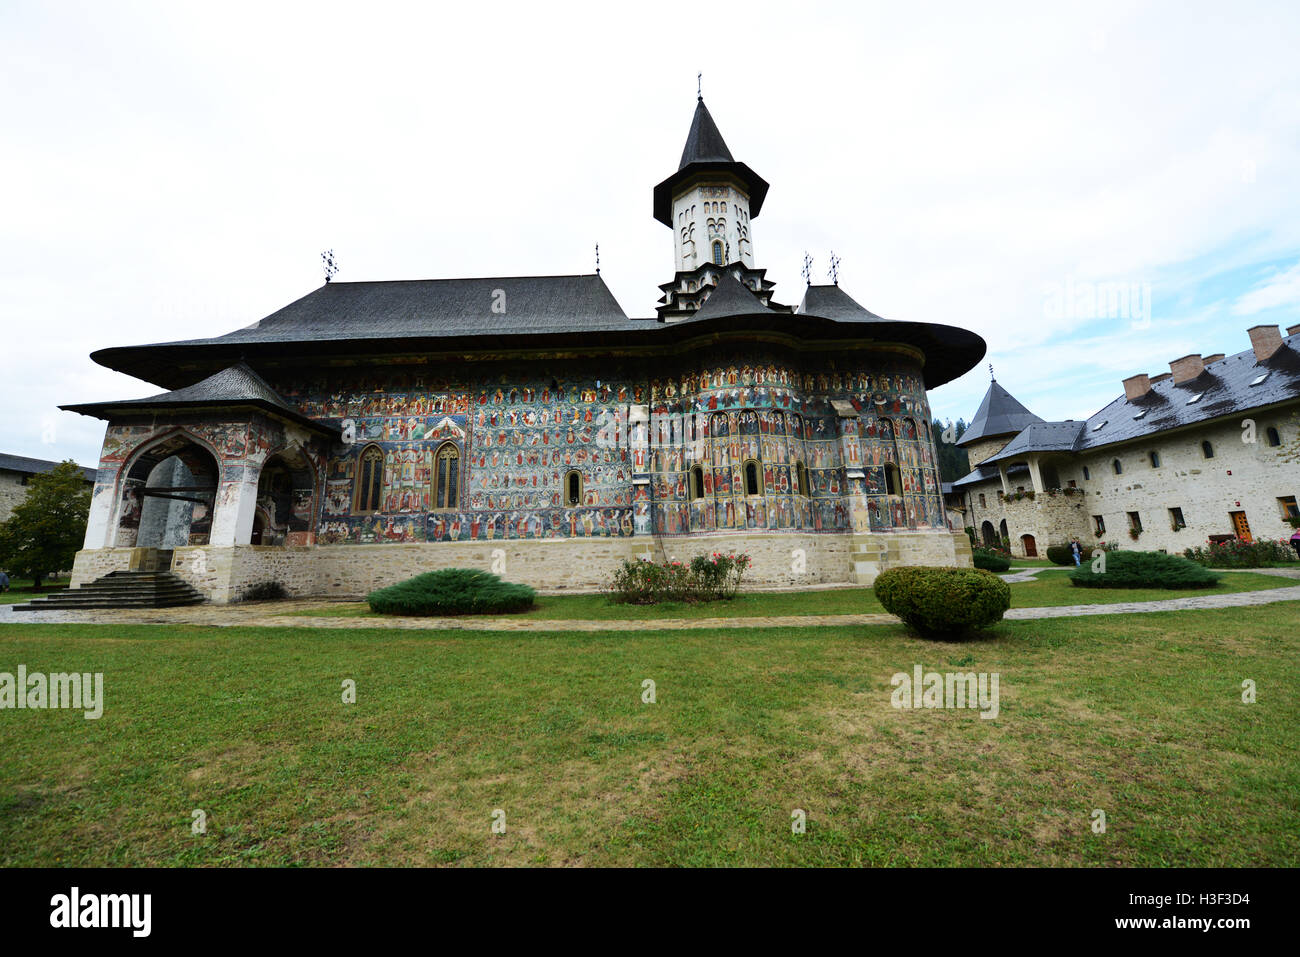 Die schöne Kirche zu gemalt Klosters Sucevita in nördlichen Moldawien, Rumänien. Stockfoto